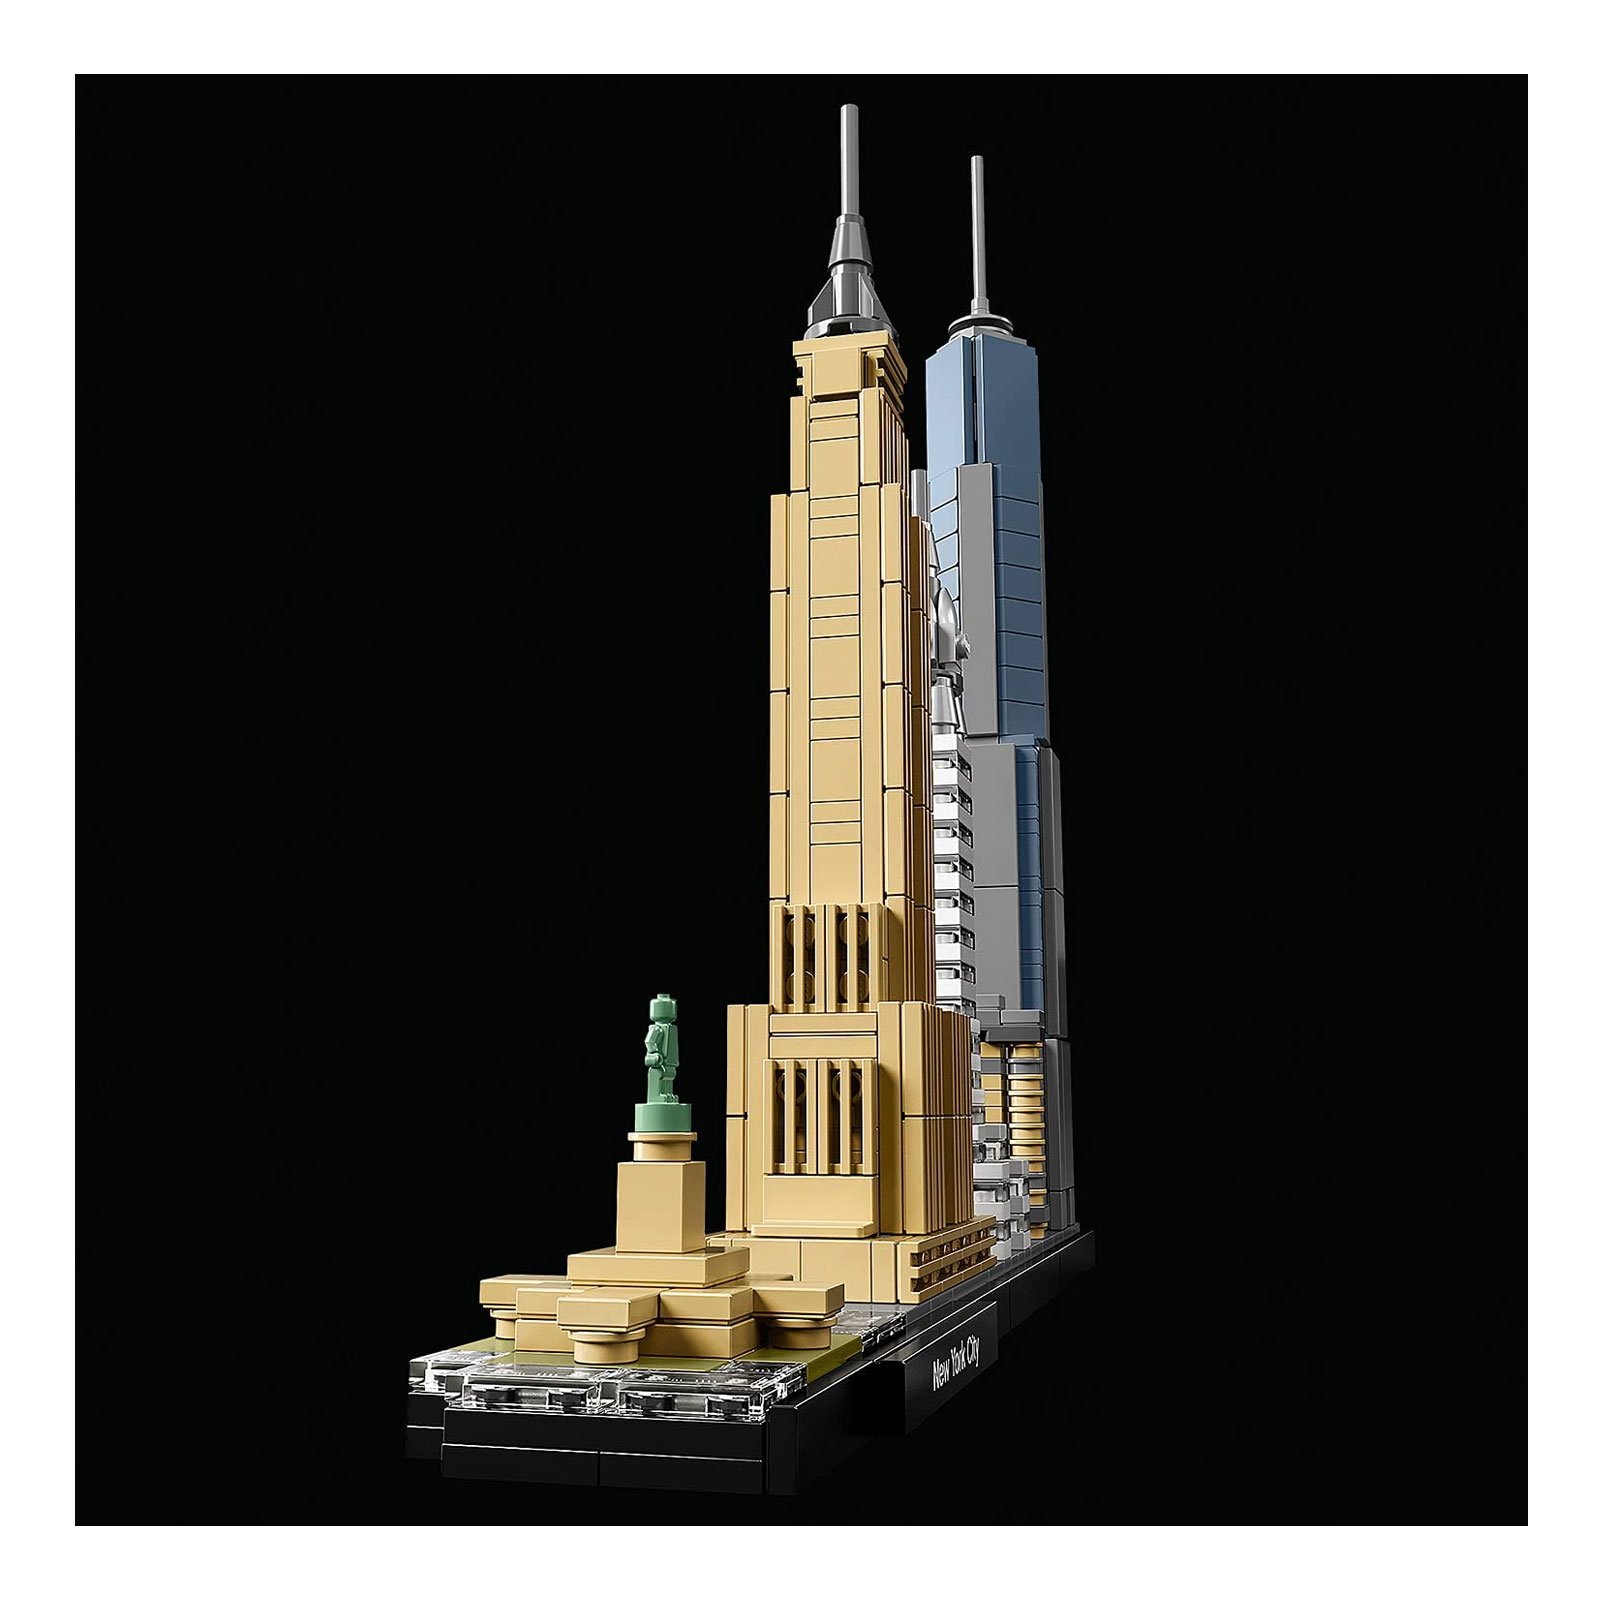 LEGO 21028 Architecture New York City, Skyline-Kollektion mit Freiheisstatue